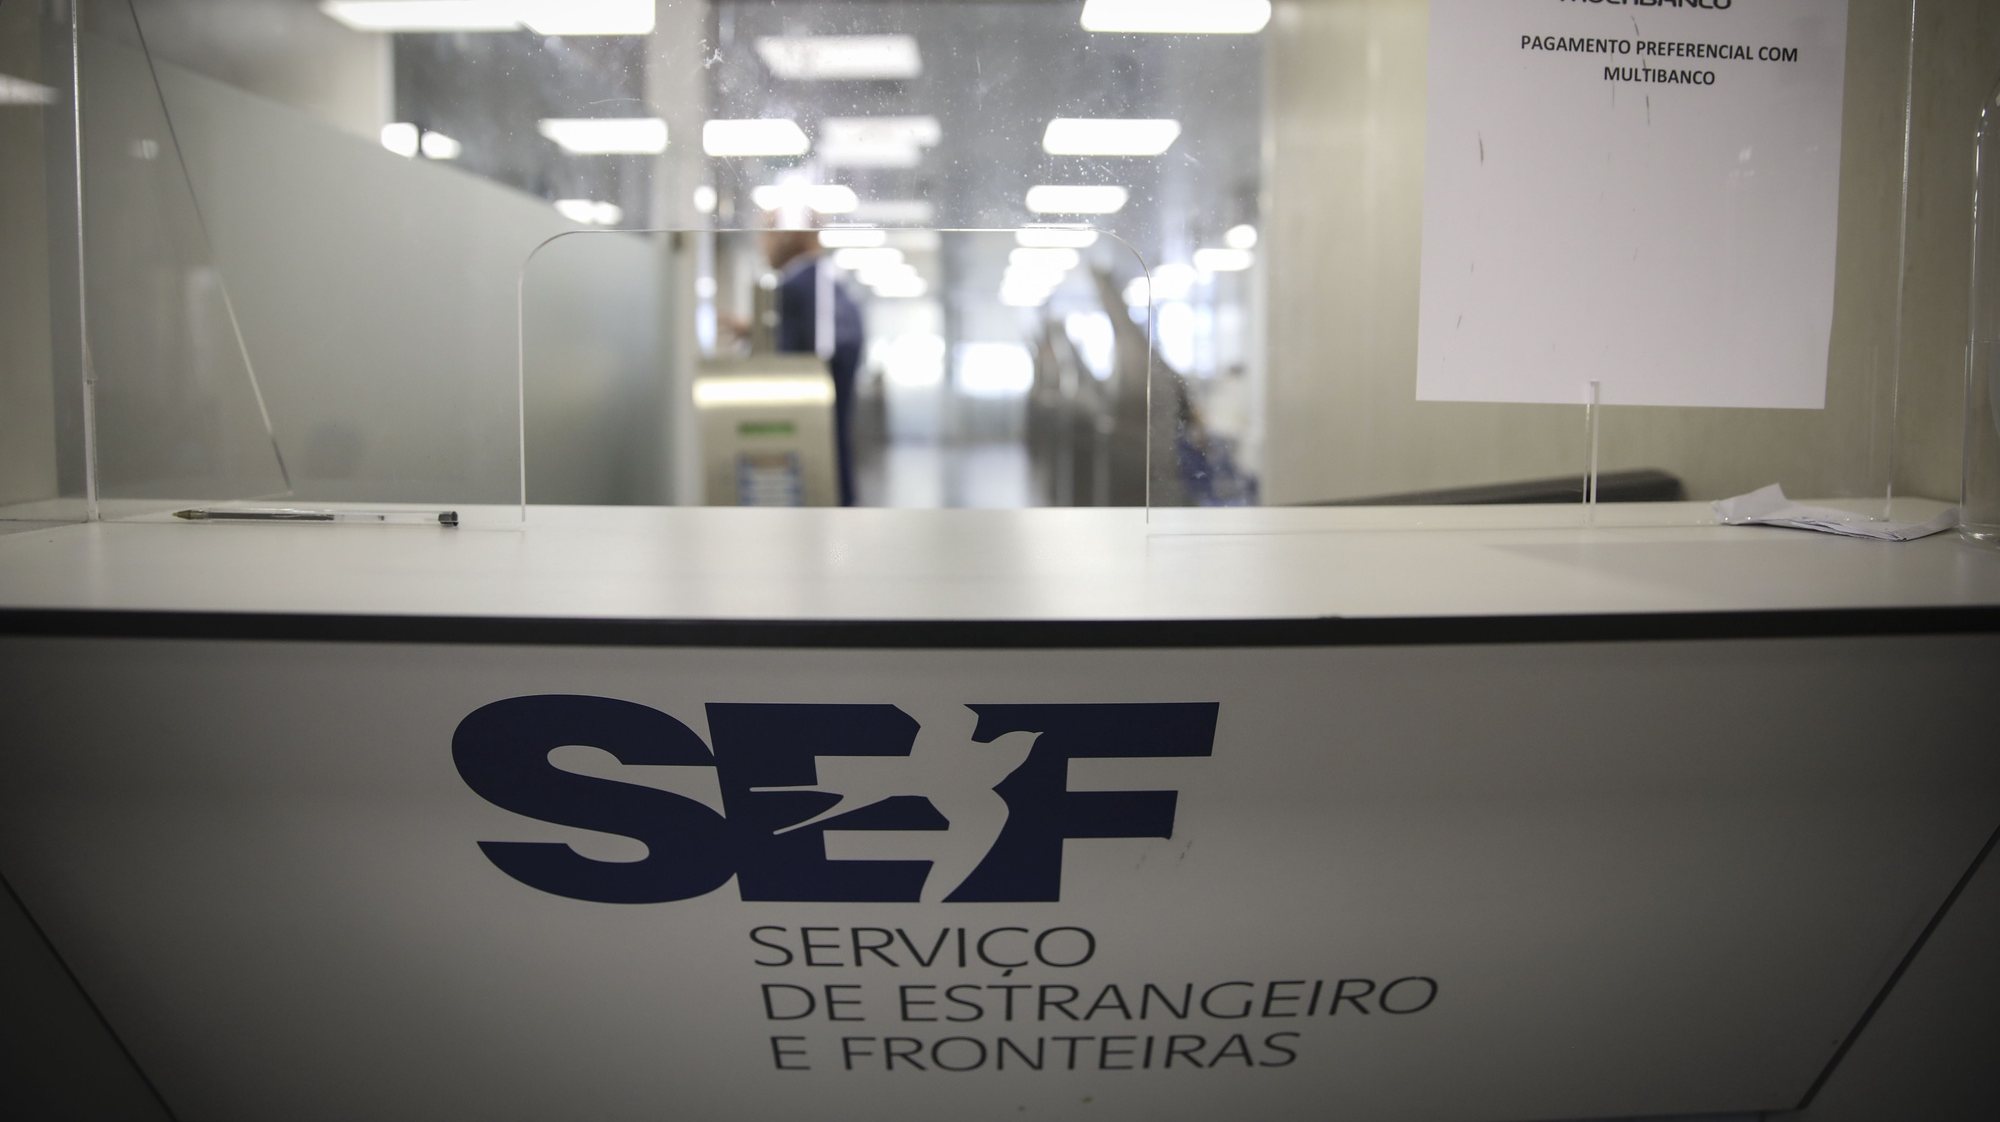 Instalações do Serviço de Estangeiros e Fronteiras (SEF) F, em Lisboa, 26 setembro 2022.  ANDRÉ KOSTERS / LUSA